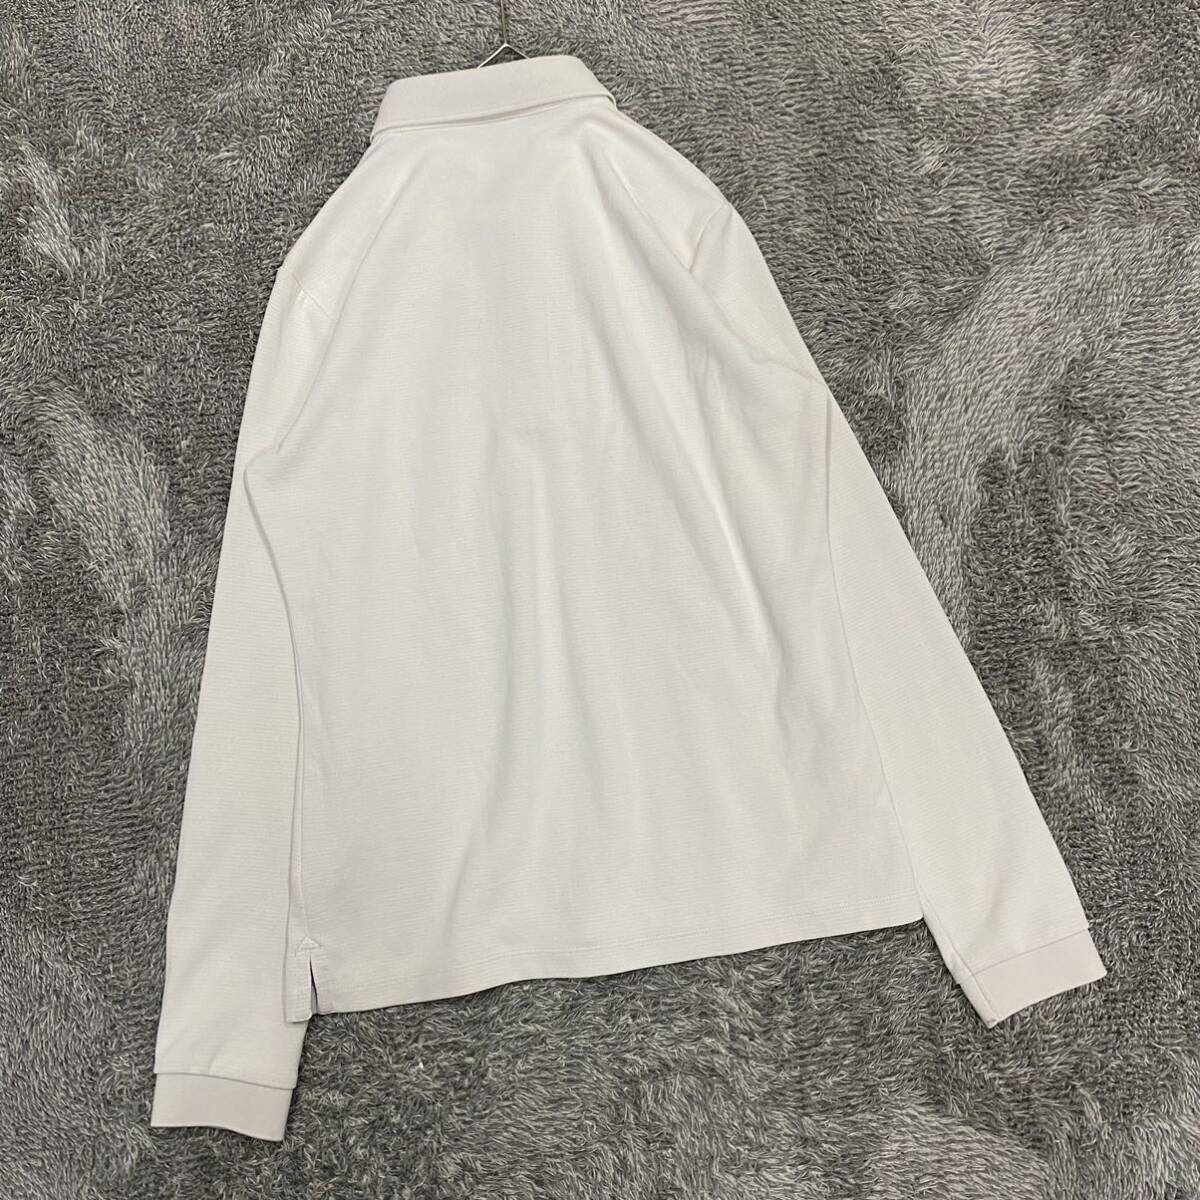 Munsingwear Munsingwear одежда рубашка с длинным рукавом рубашка-поло с длинным рукавом размер L белый мужской tops нет максимальной ставки (L18)